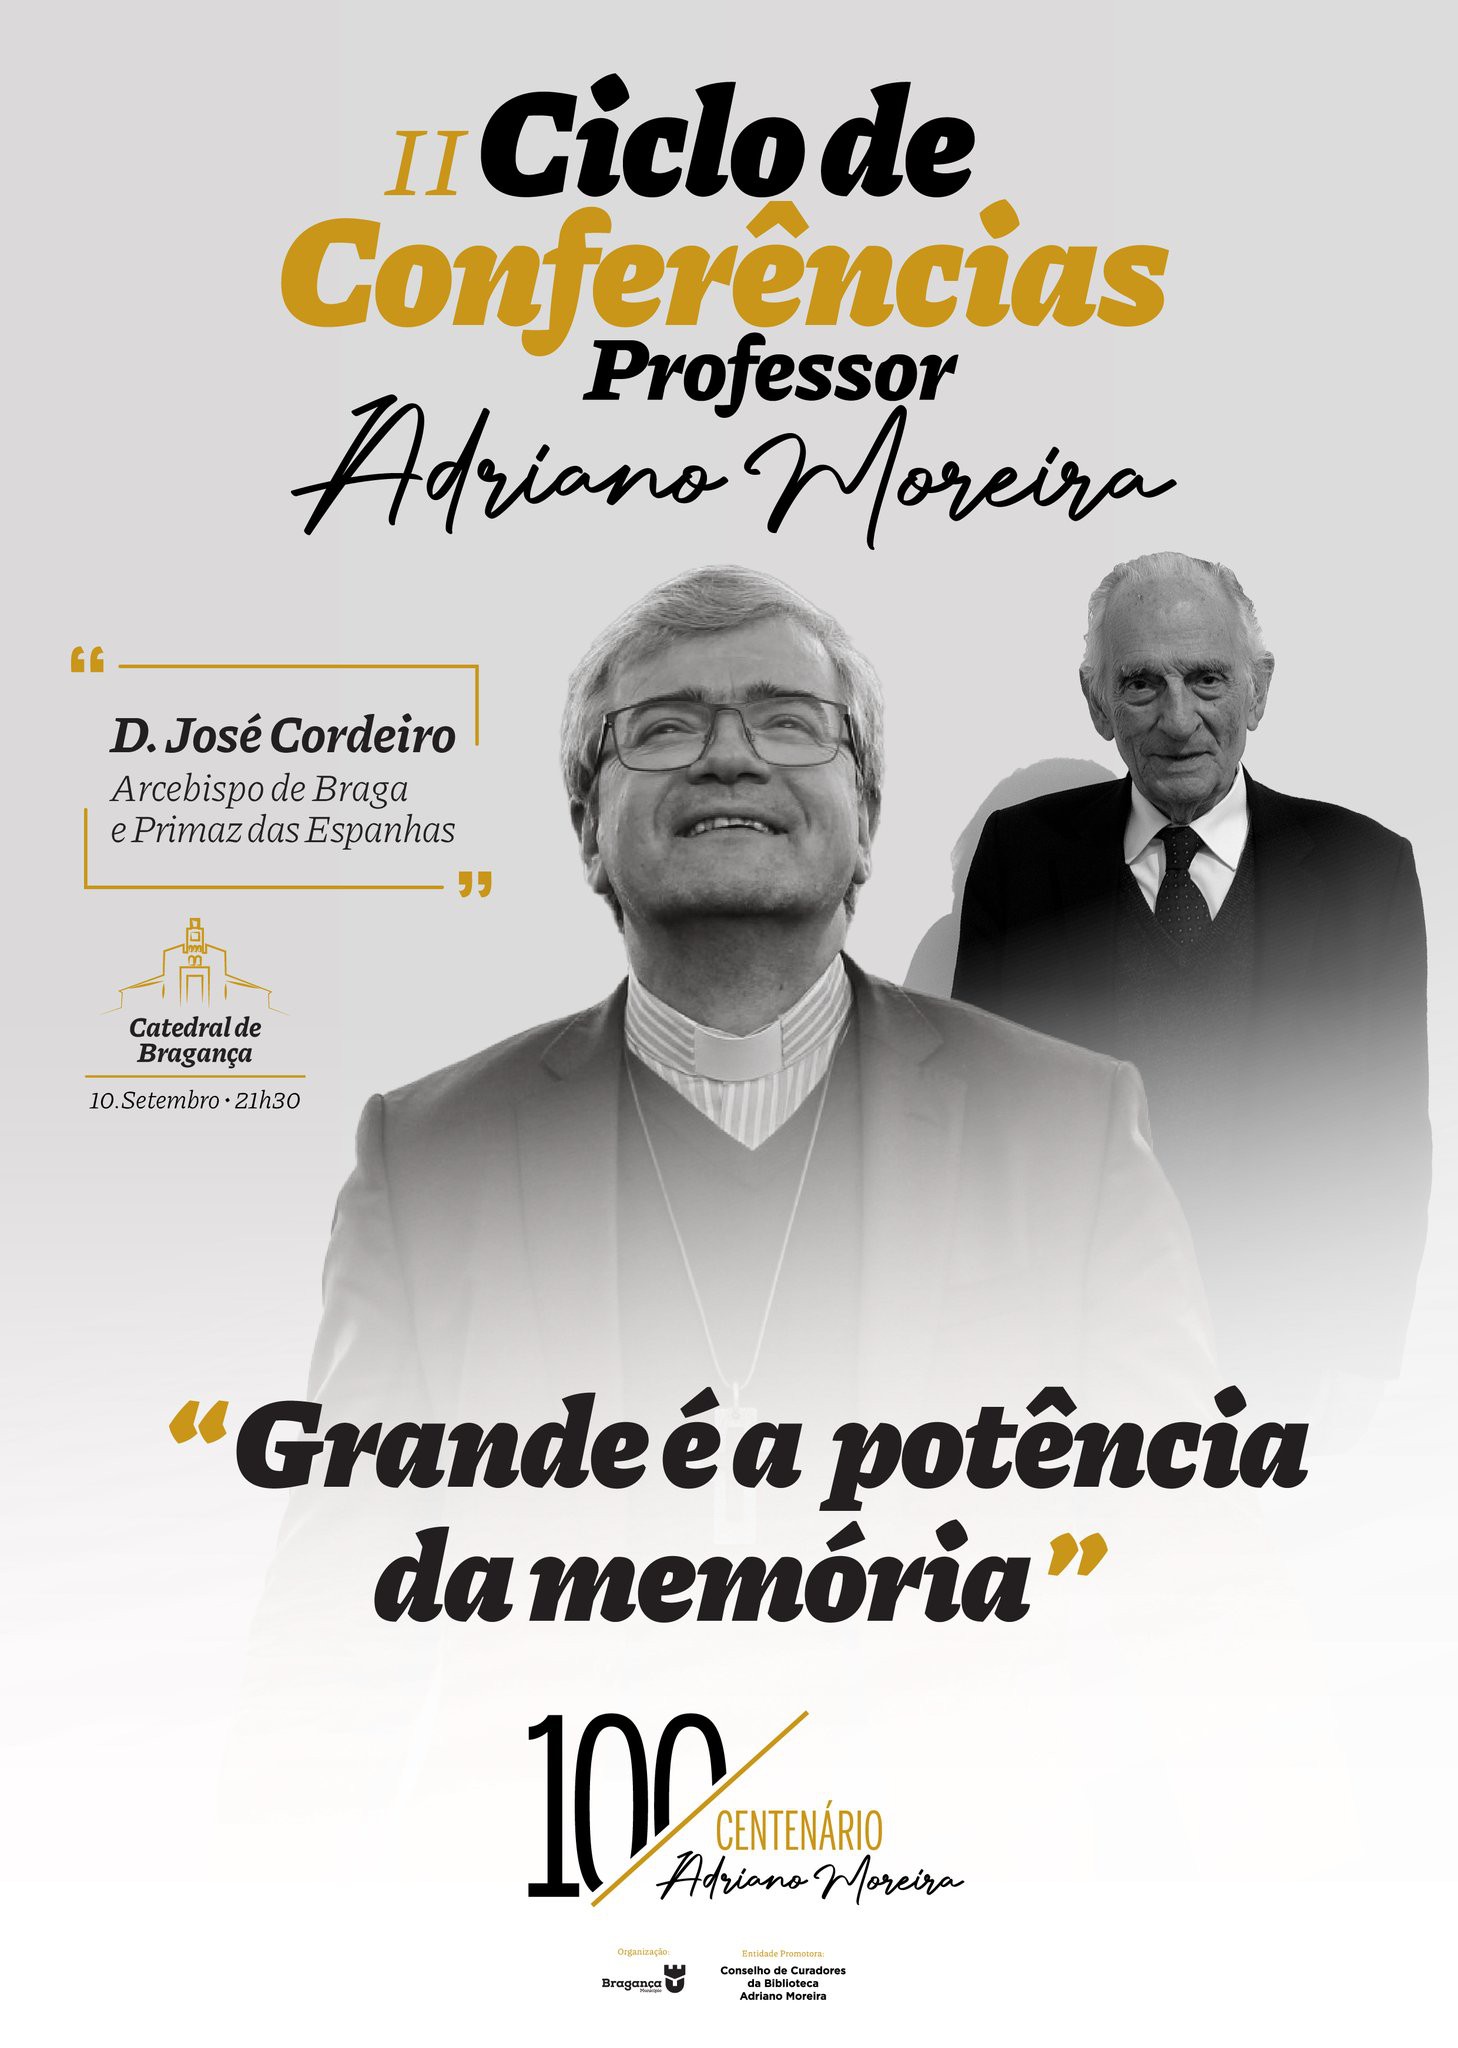 Município de Bragança celebra centenário de Adriano Moreira